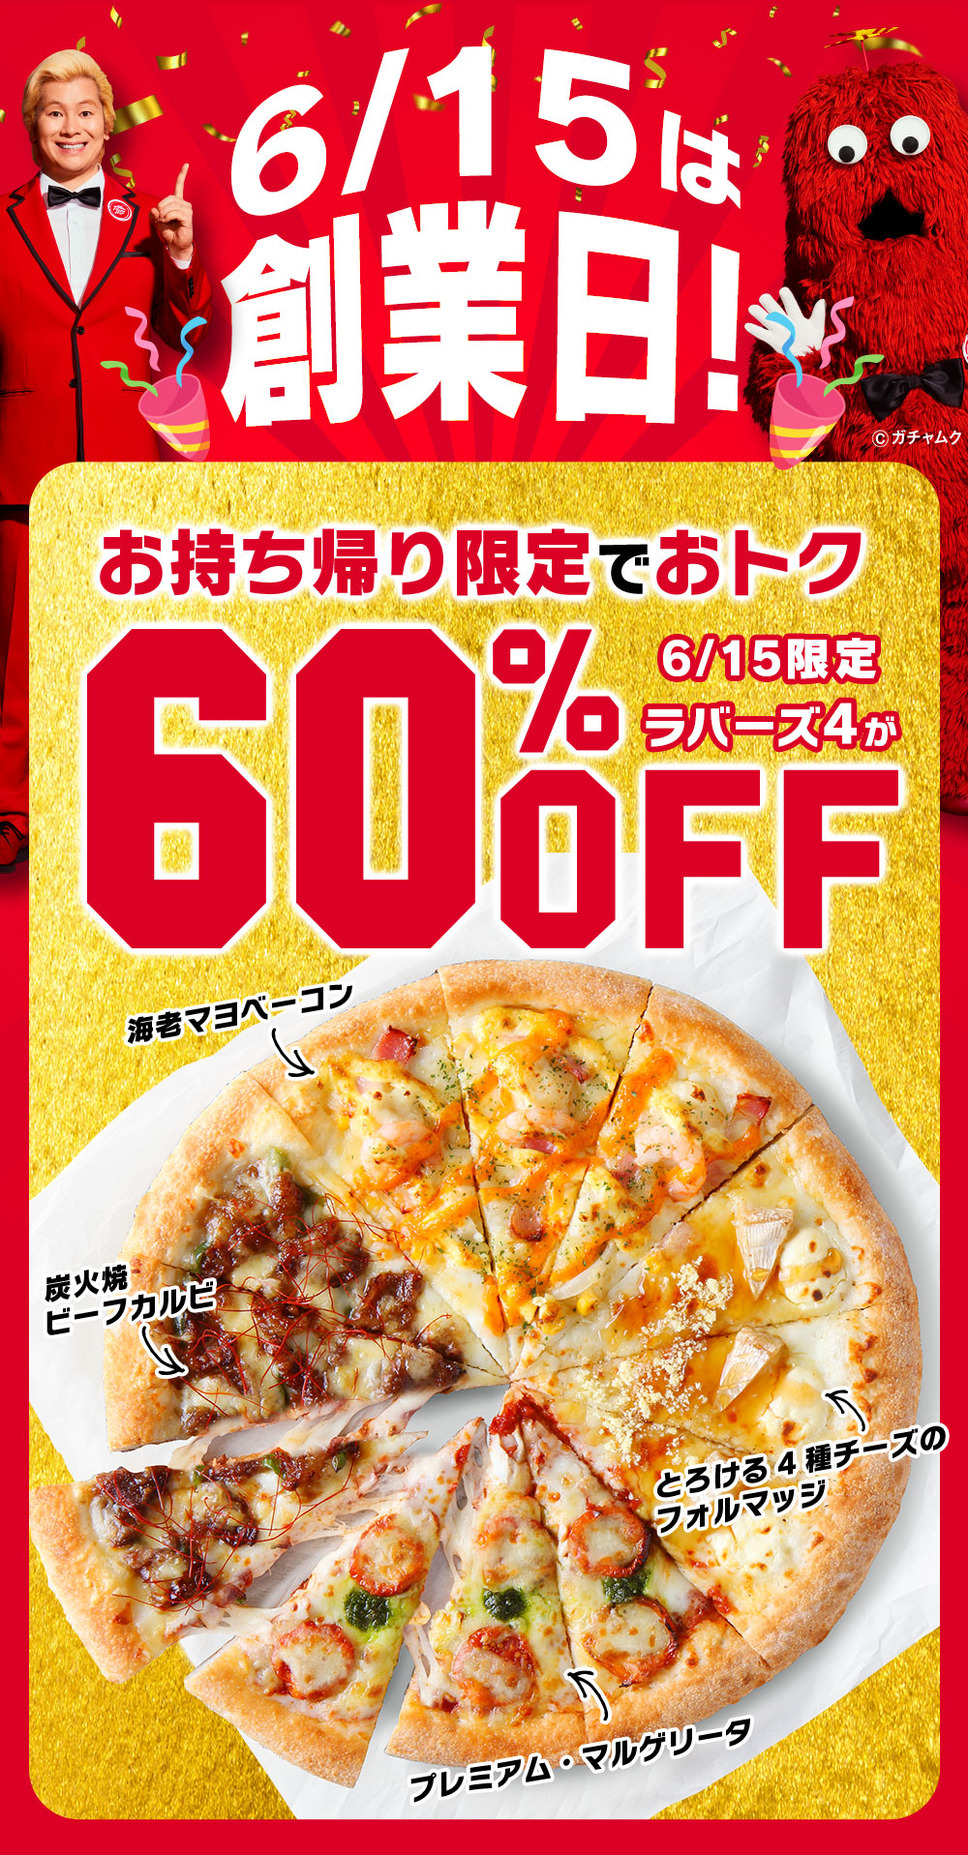 6/15(水)創業日はお持ち帰り限定で「ラバーズ4」ピザが60%OFF